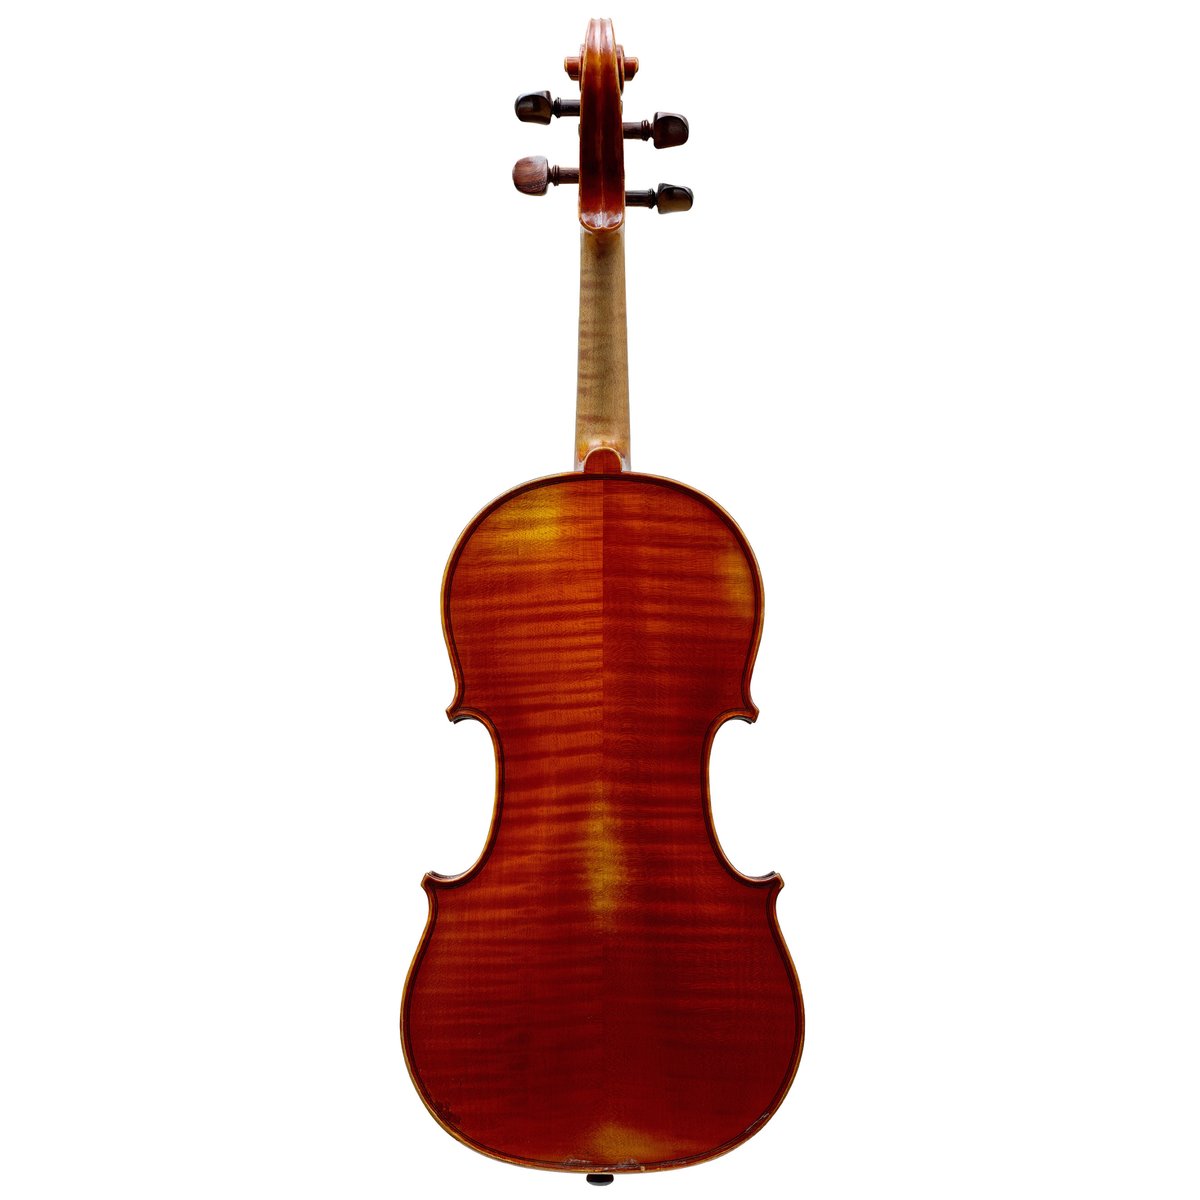 ヴァイオリン】アルベール・ドゥブレ / ミルクール (フランス) 1928年